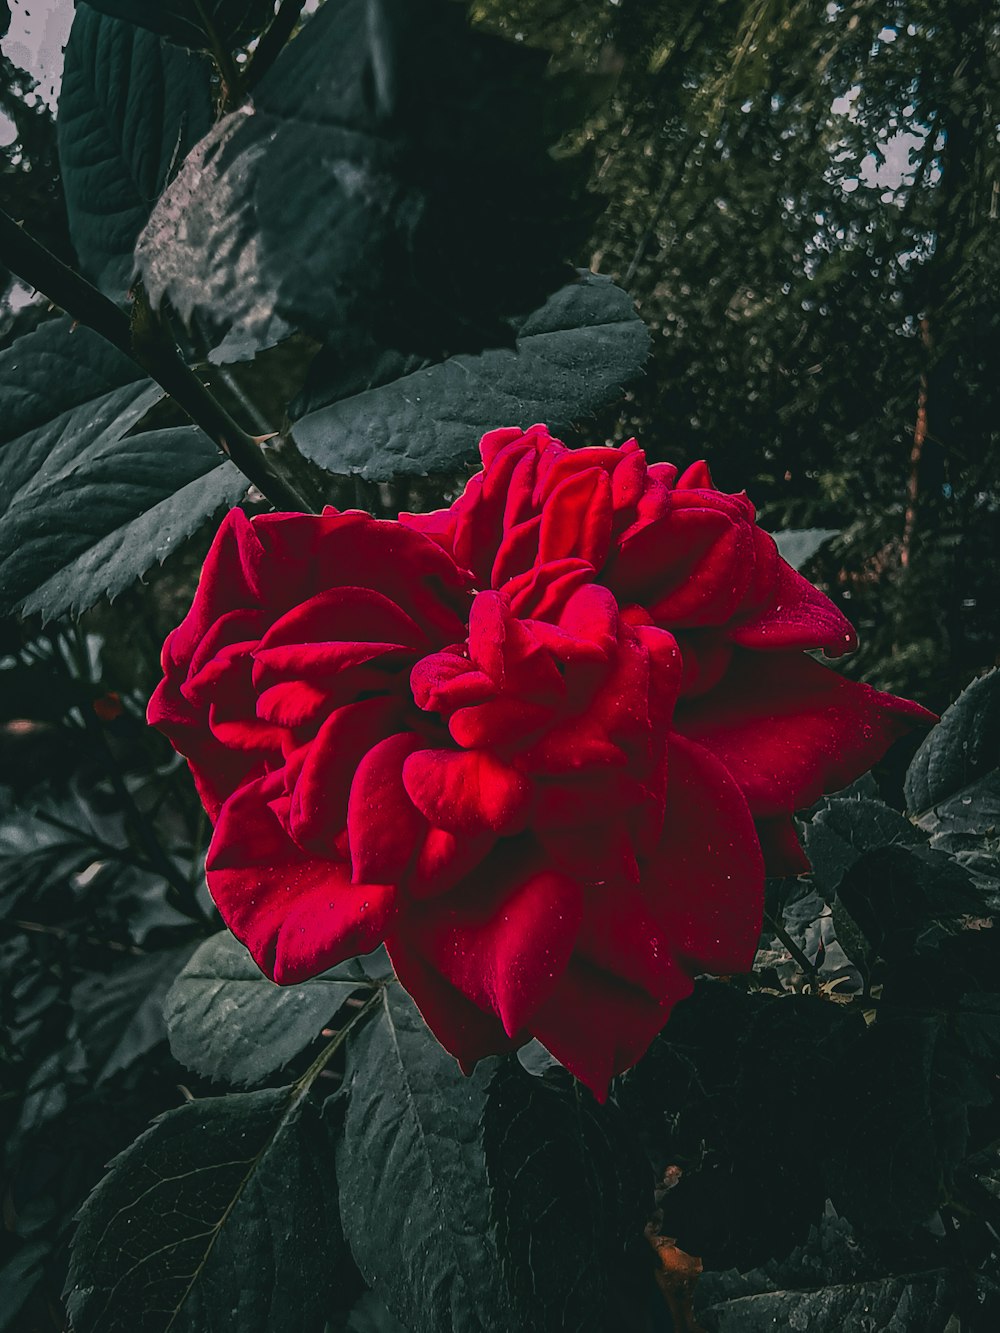 a red flower in a garden